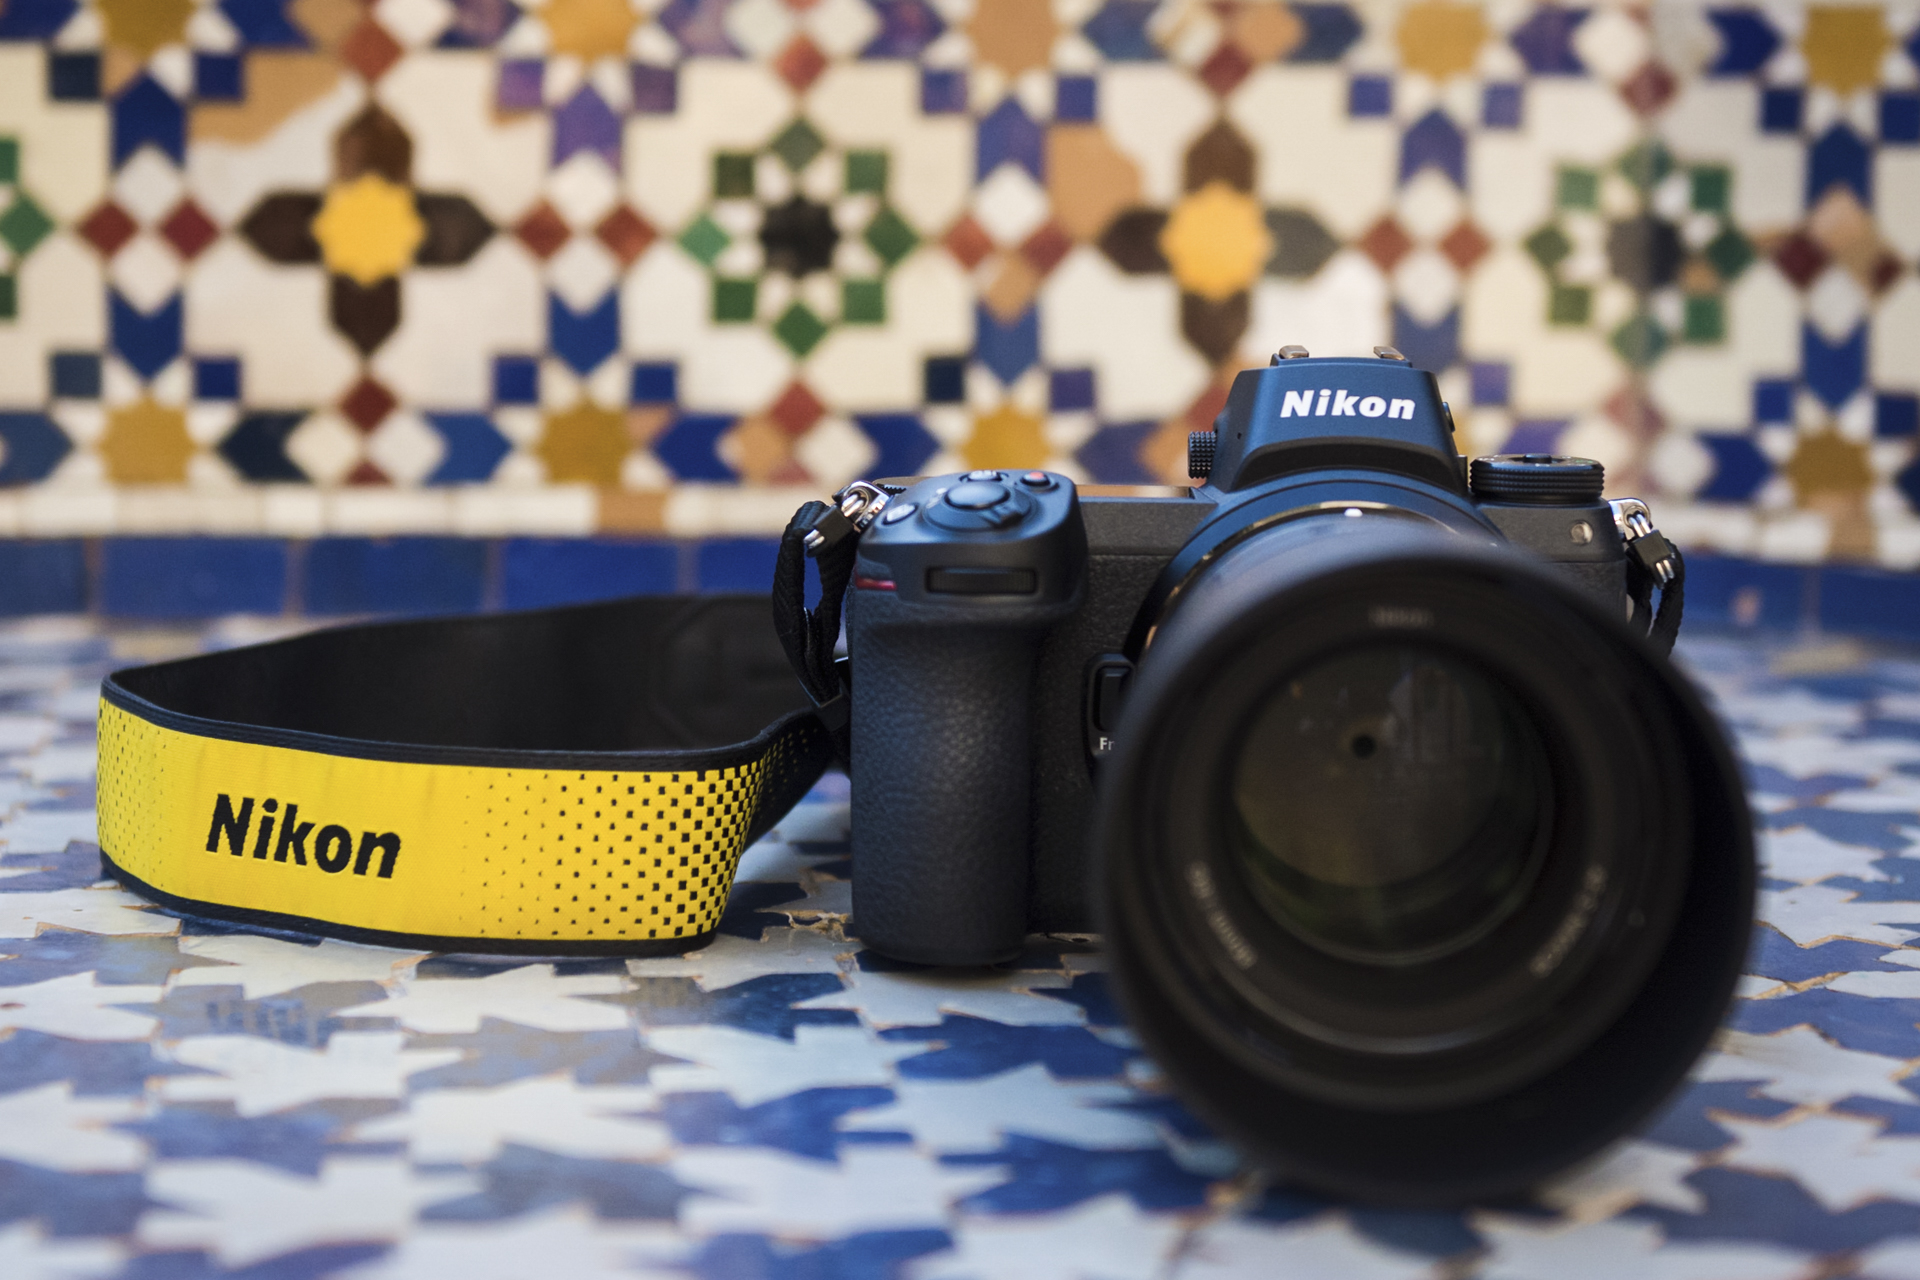 Nikon Z6 review so far